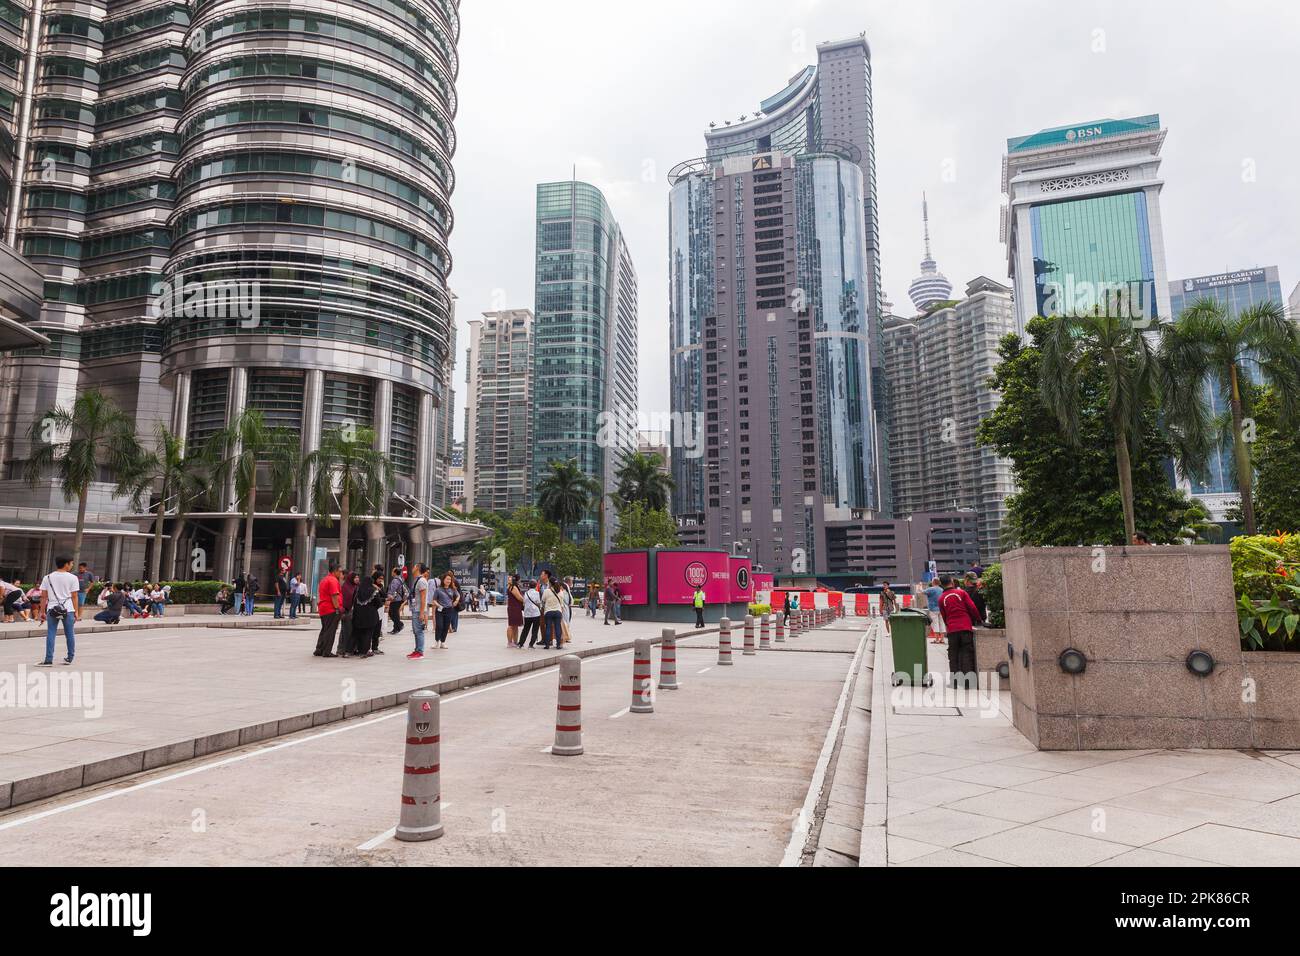 Kuala Lumpur, Malaisie - 25 novembre 2019: Les touristes sont près des tours jumelles Petronas, centre ville de Kuala Lumpur vue sur la rue en journée Banque D'Images